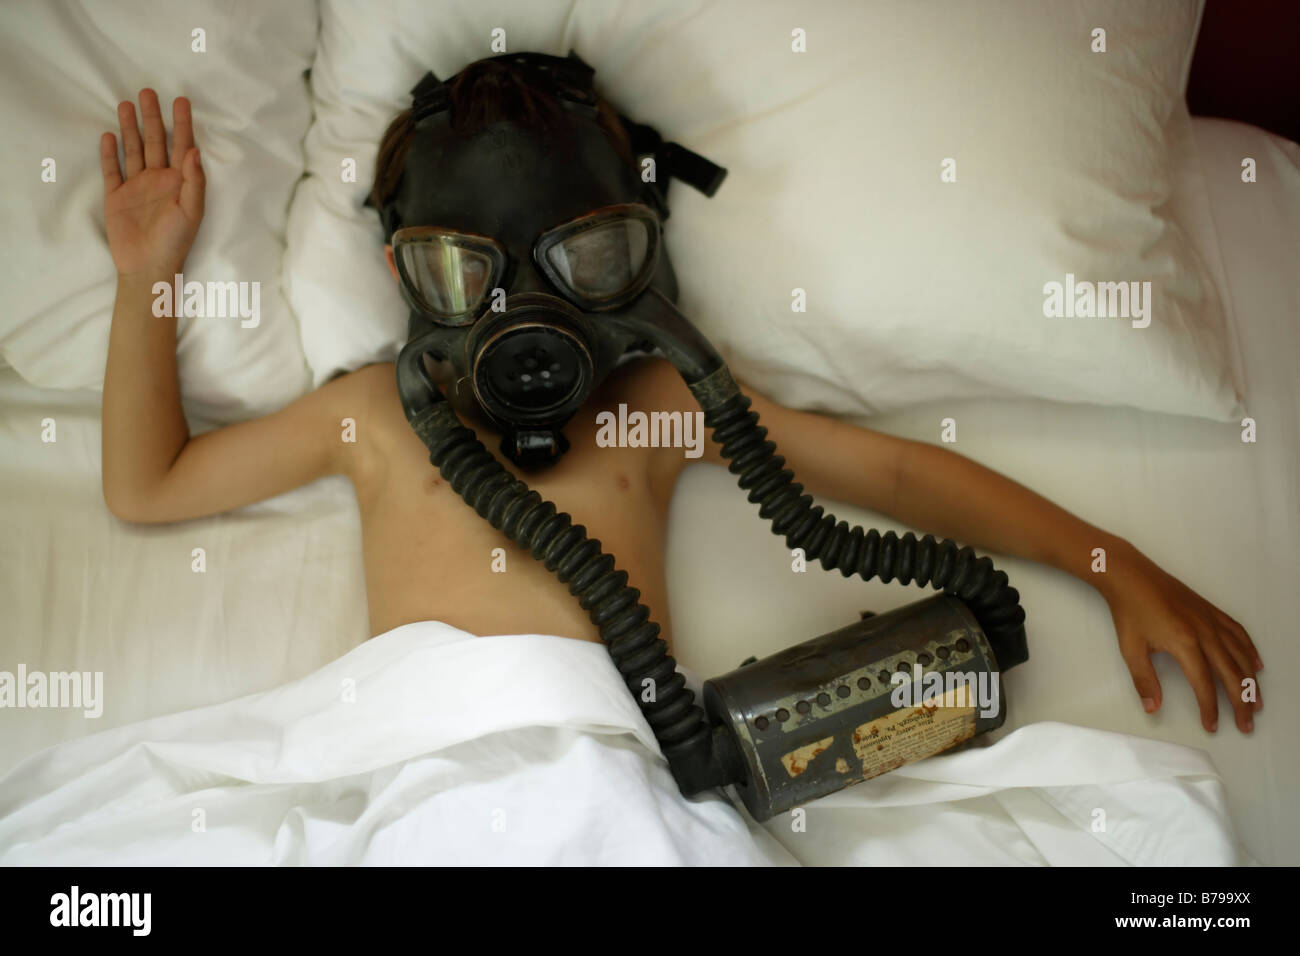 Un garçon de six ans se trouve dans le lit de porter le masque à gaz Banque D'Images